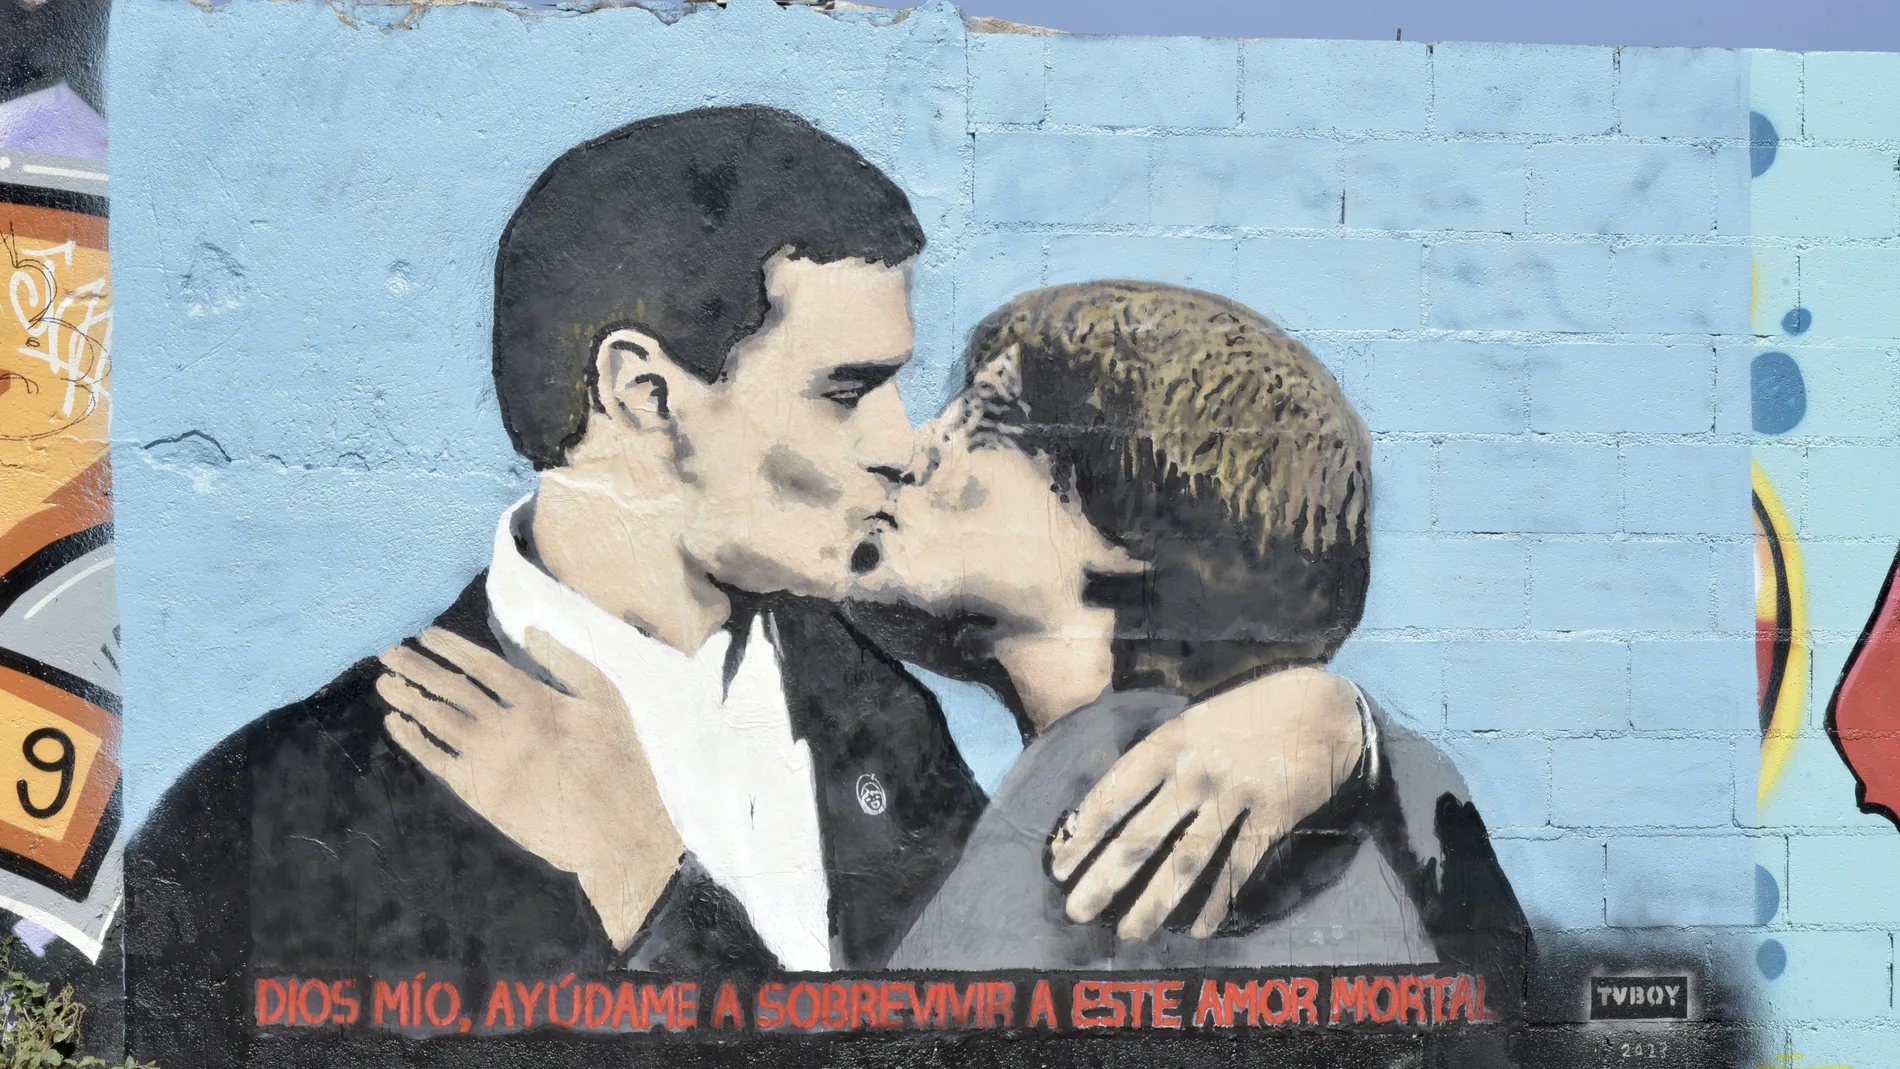 sta del la pintura del presidente Pedro Sánchez y Carles Puigdemont, dándose un beso en el mural del artista urbano TVBoy,